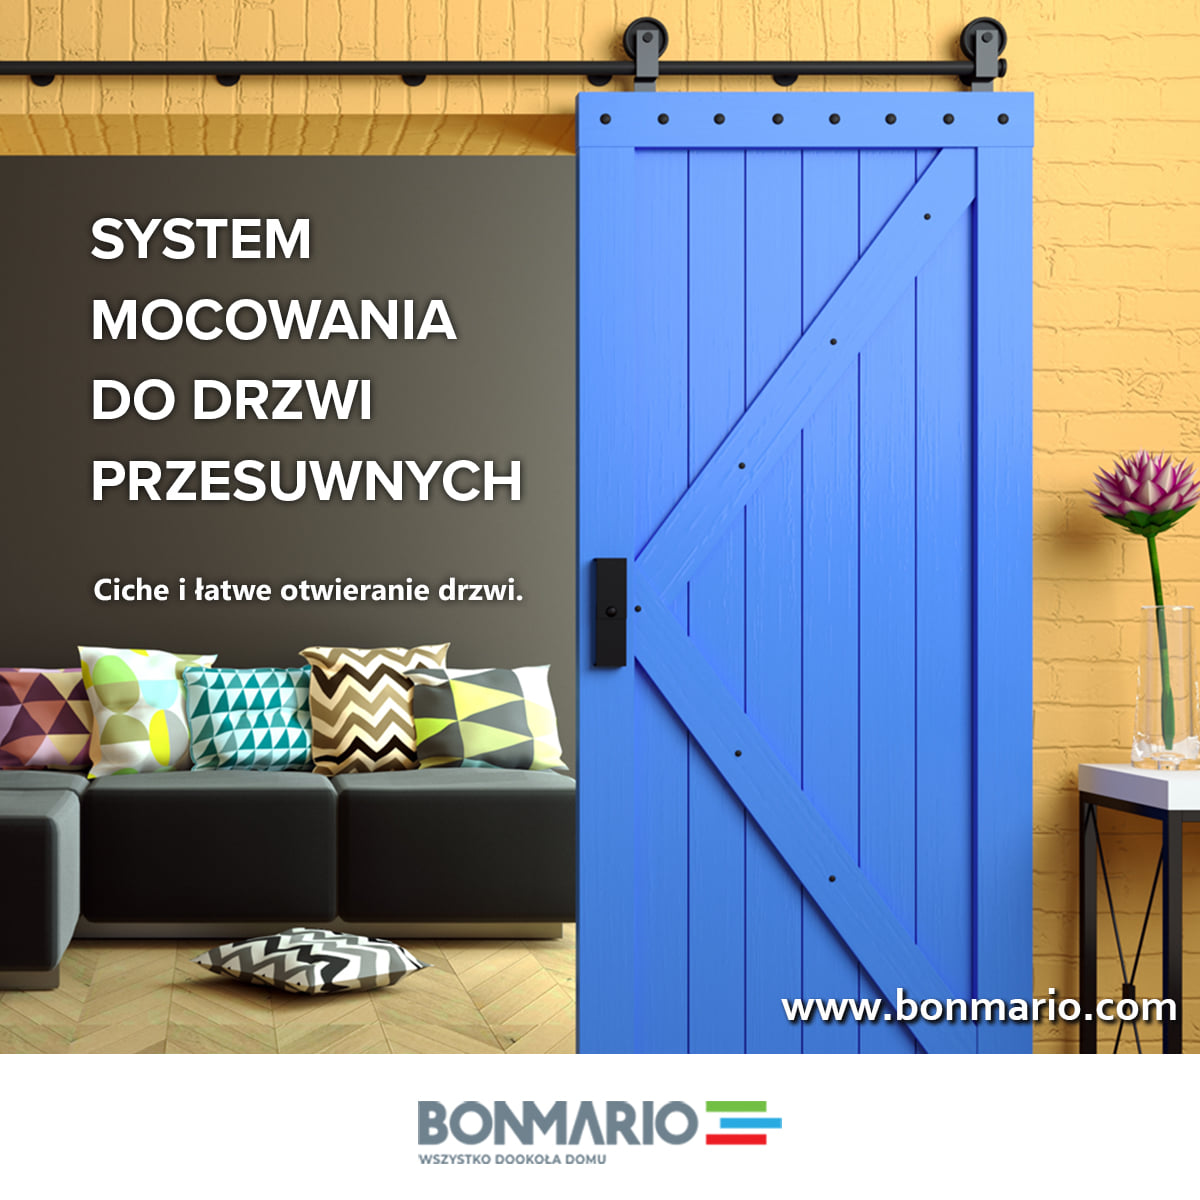 system drzwi przesuwnych bonmario.com